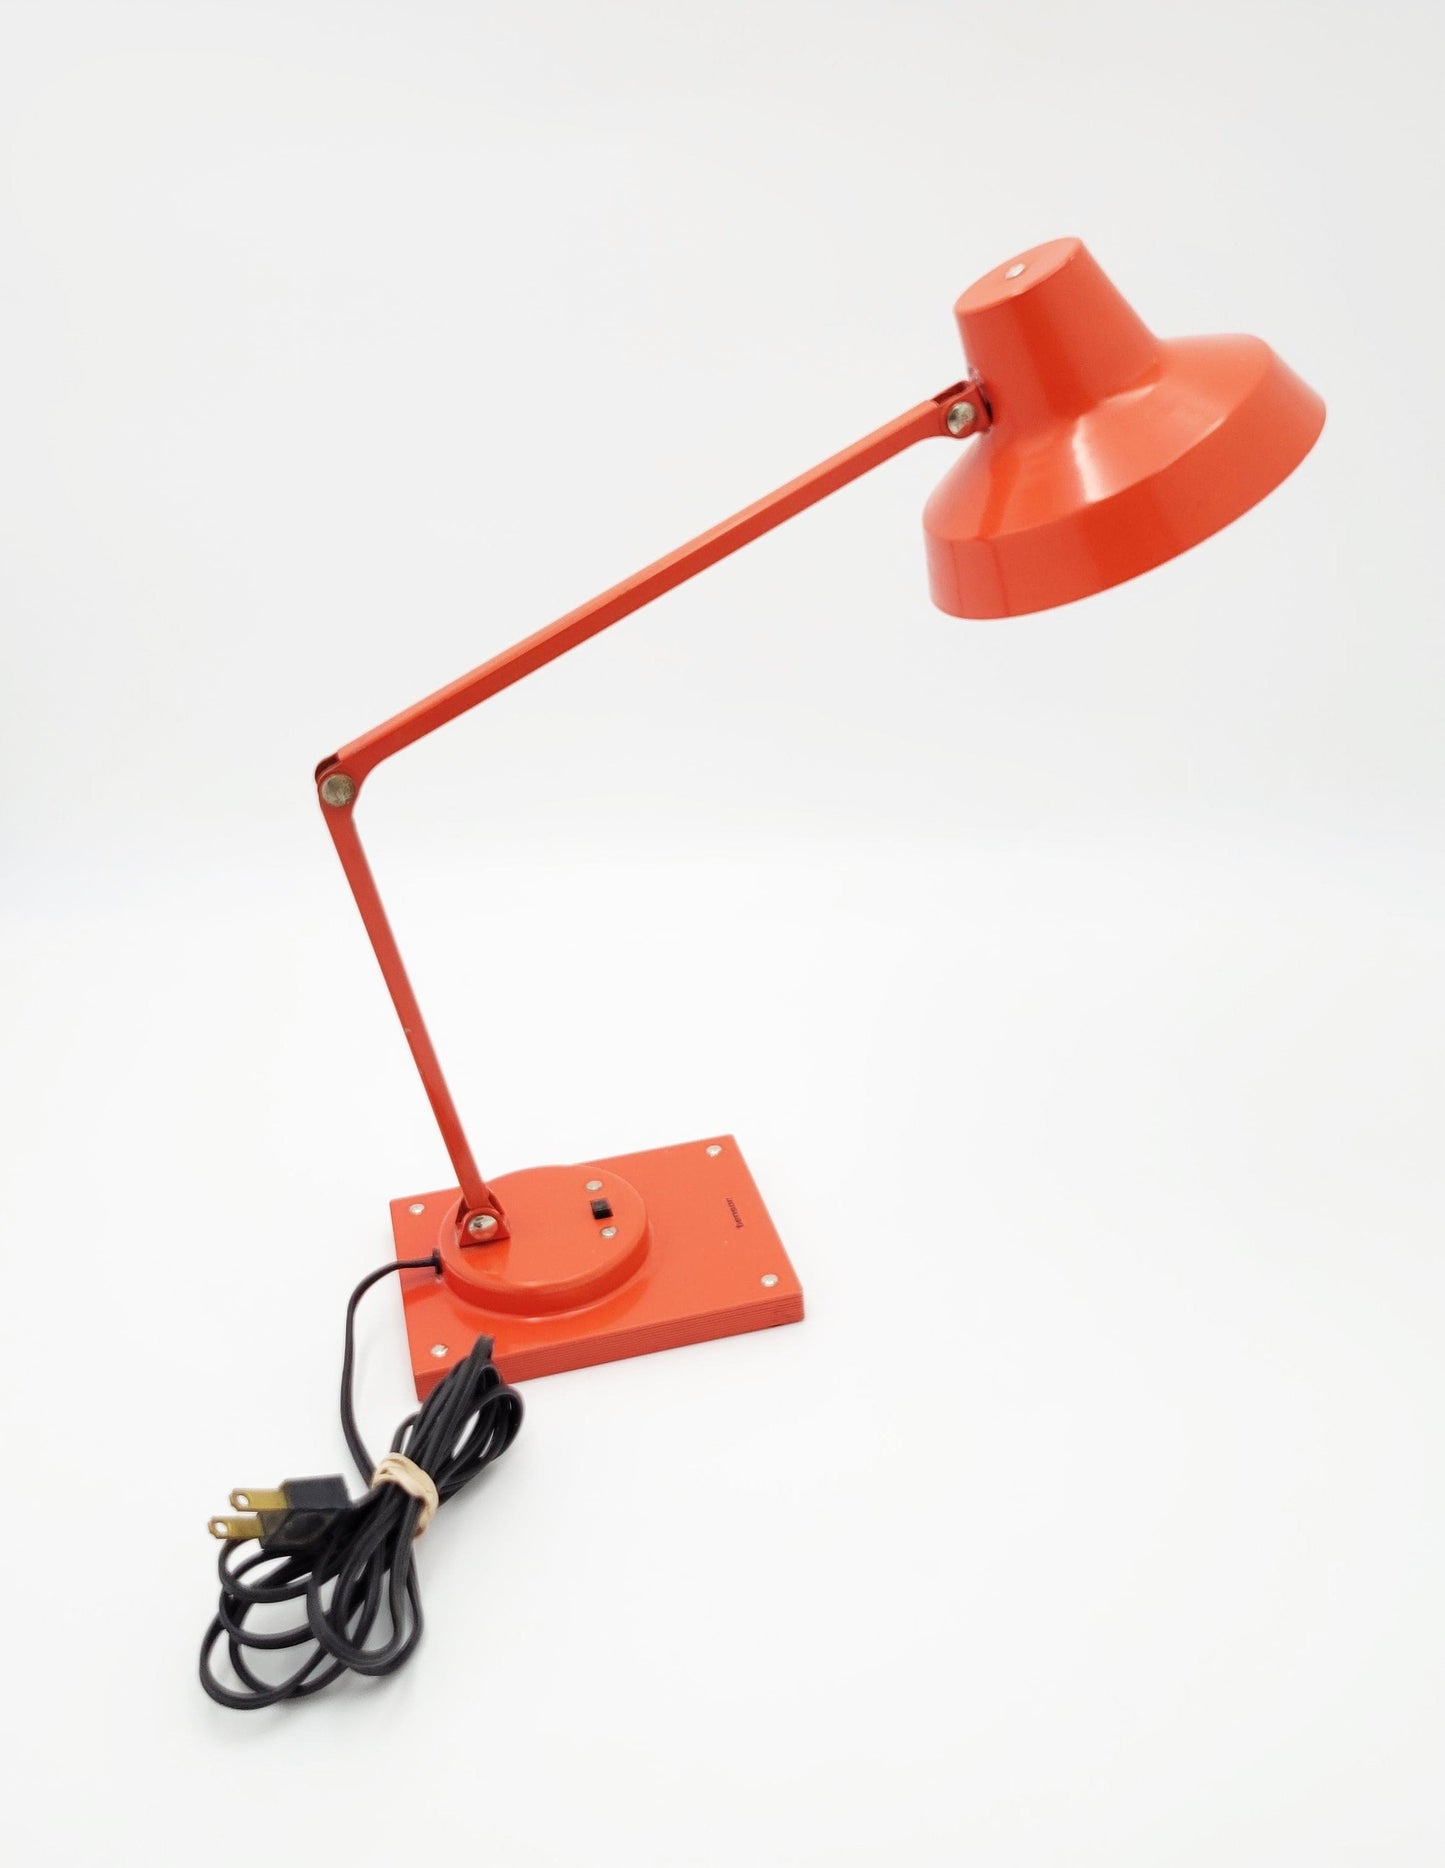 Tensor Lighting Rare Jay Monroe for Tensor Atomic Orange Articulated Desk Table Lamp 1960s